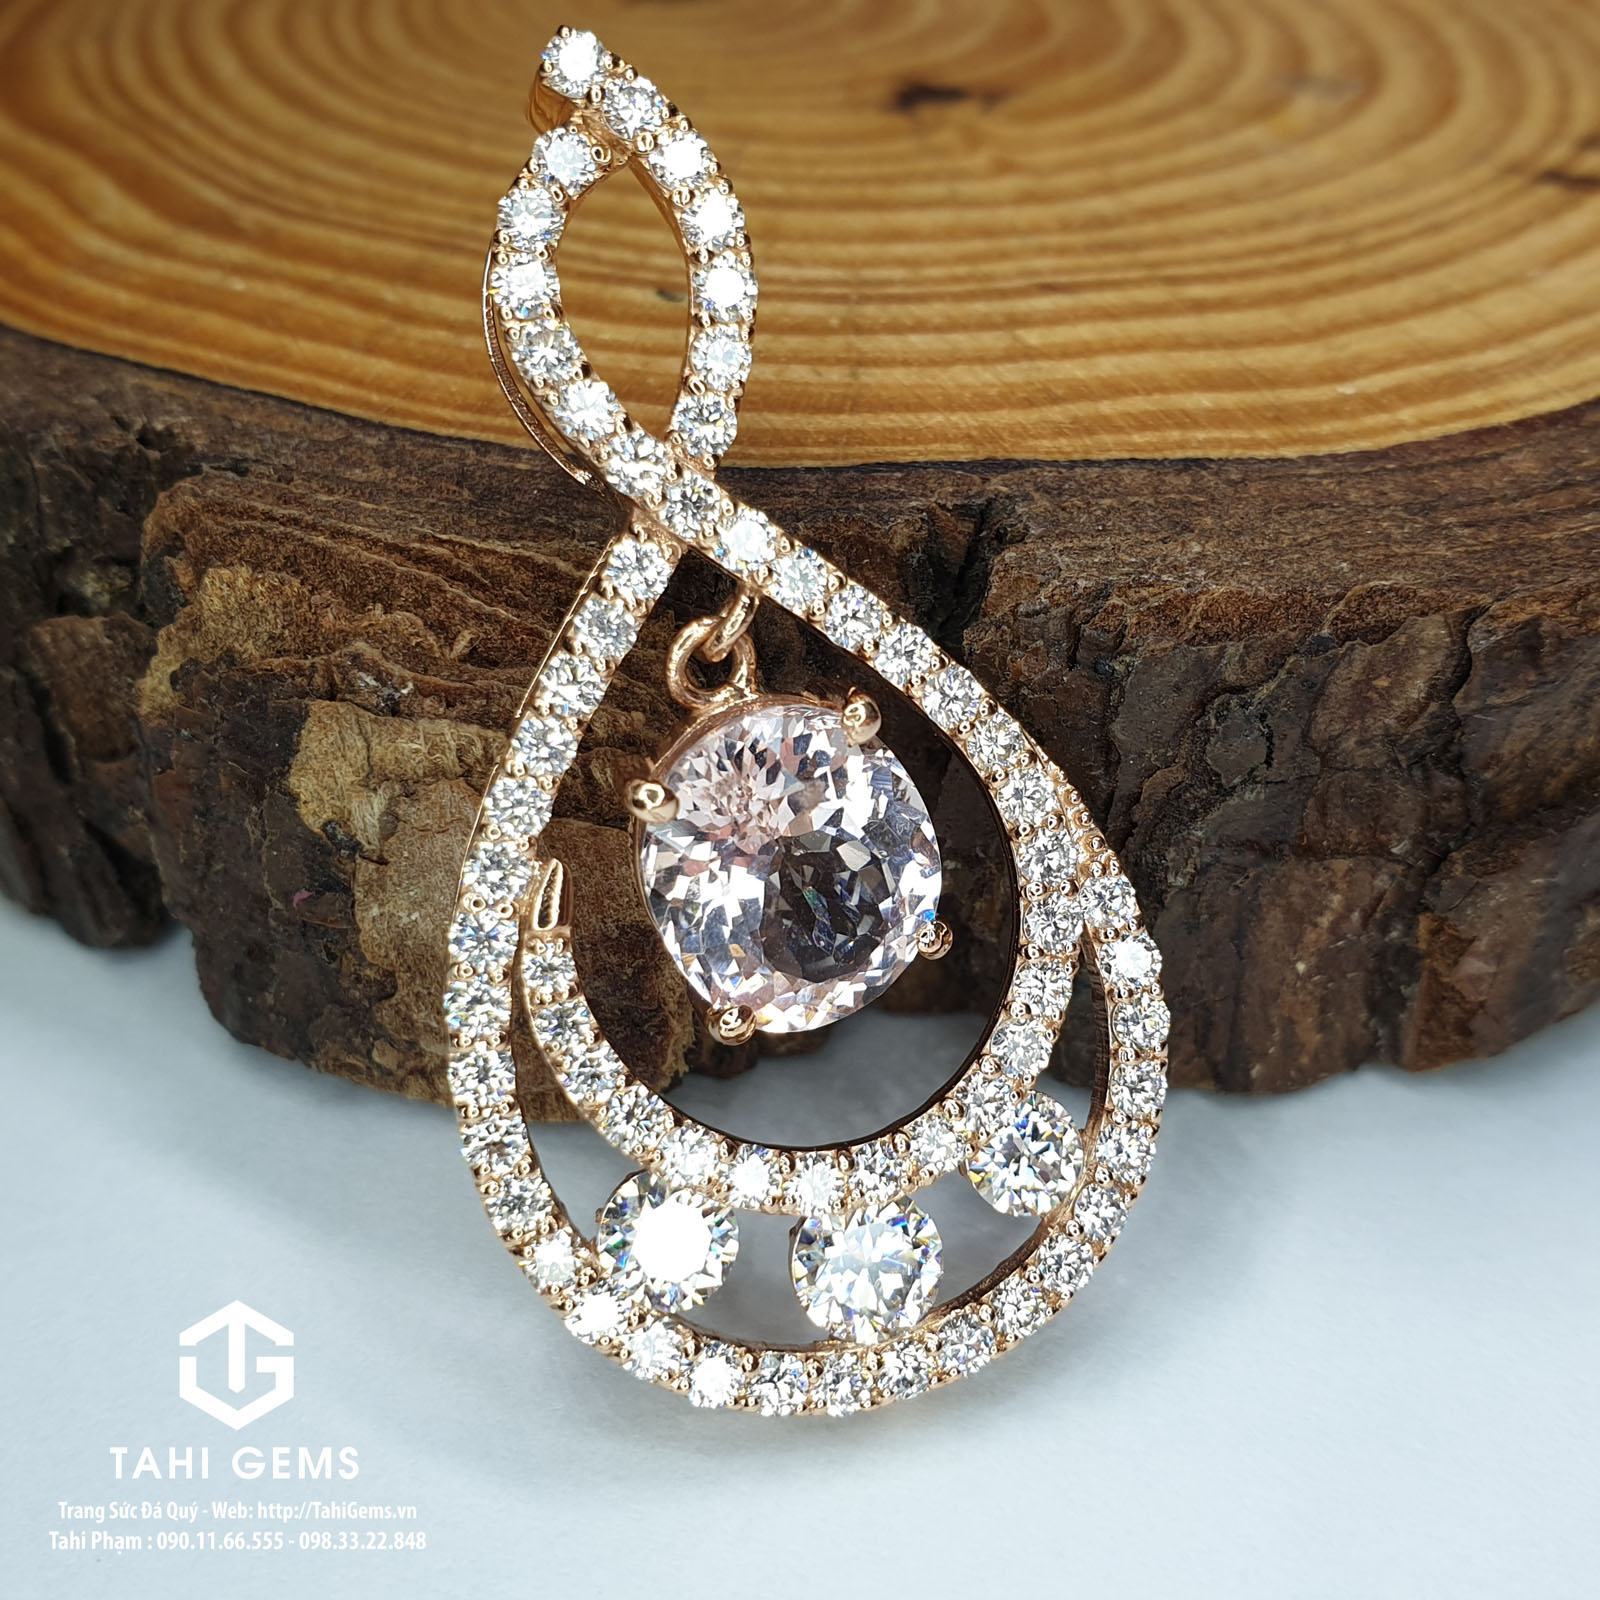 Tahi 5993 – Mặt dây chuyền Morganite mix Diamond và Moissanite